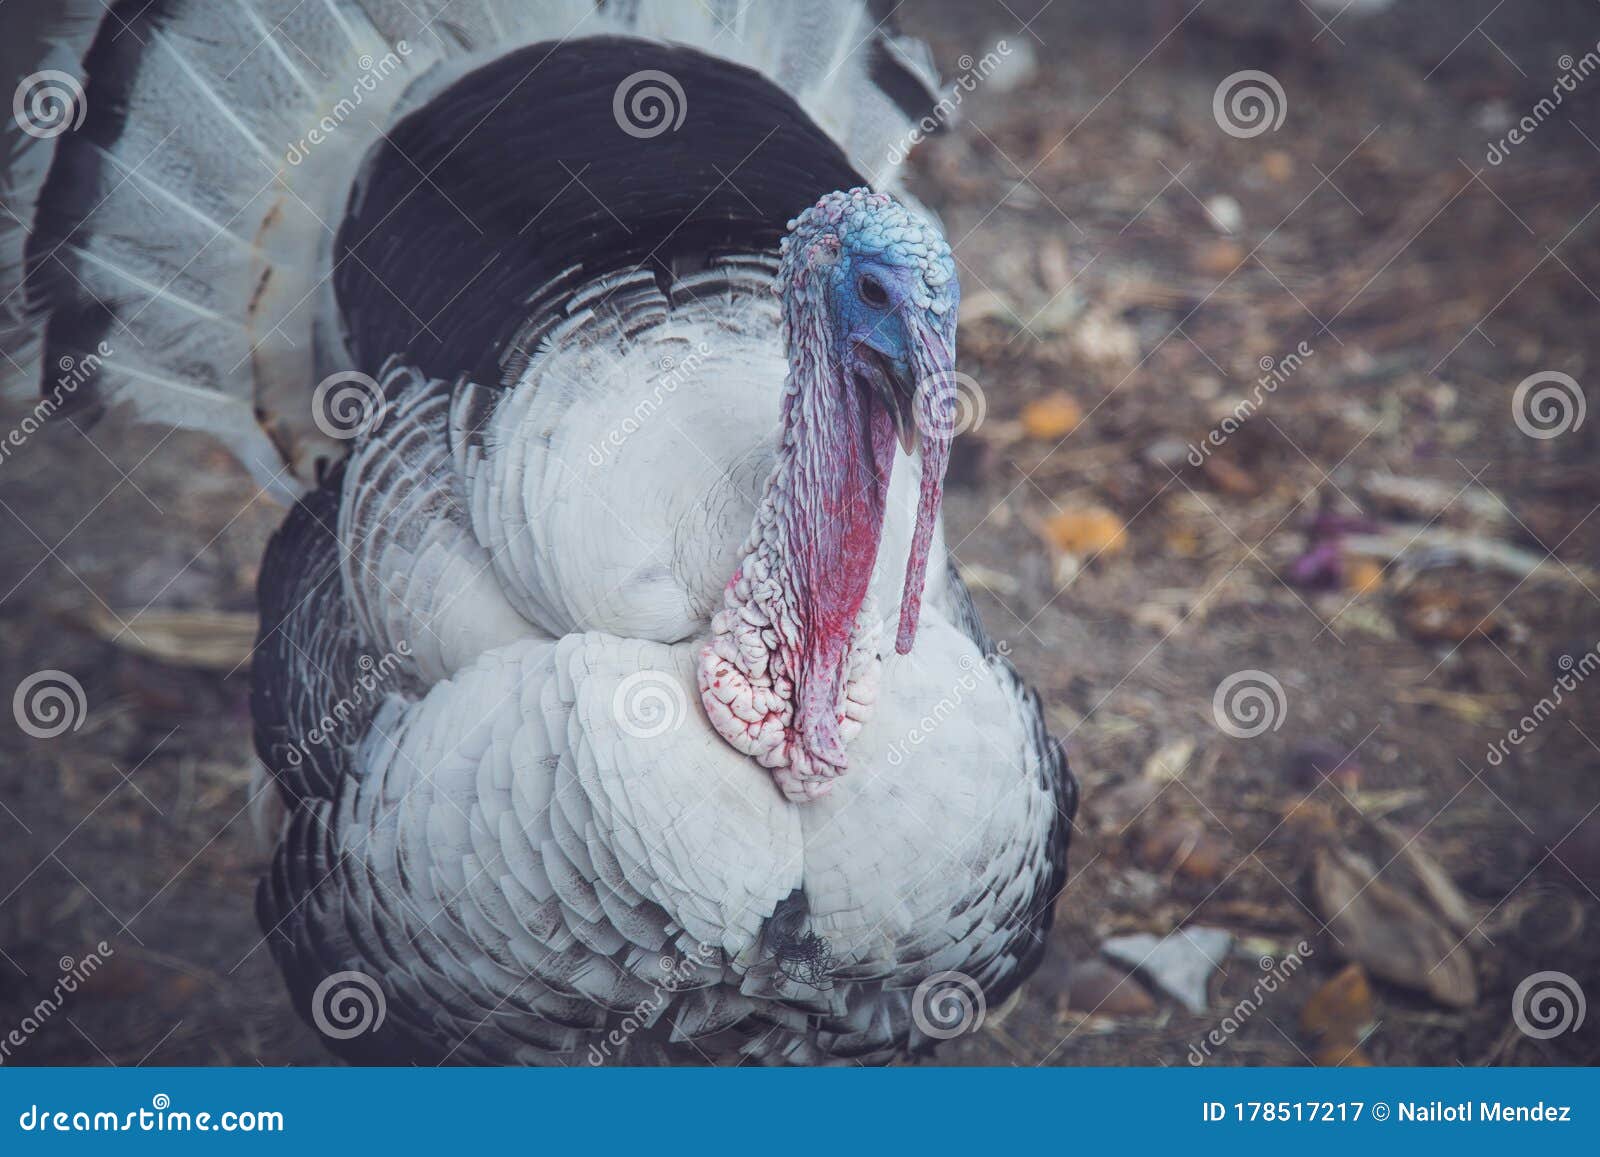 gorgeous turkey white  on background. portrait of farming bird turkey